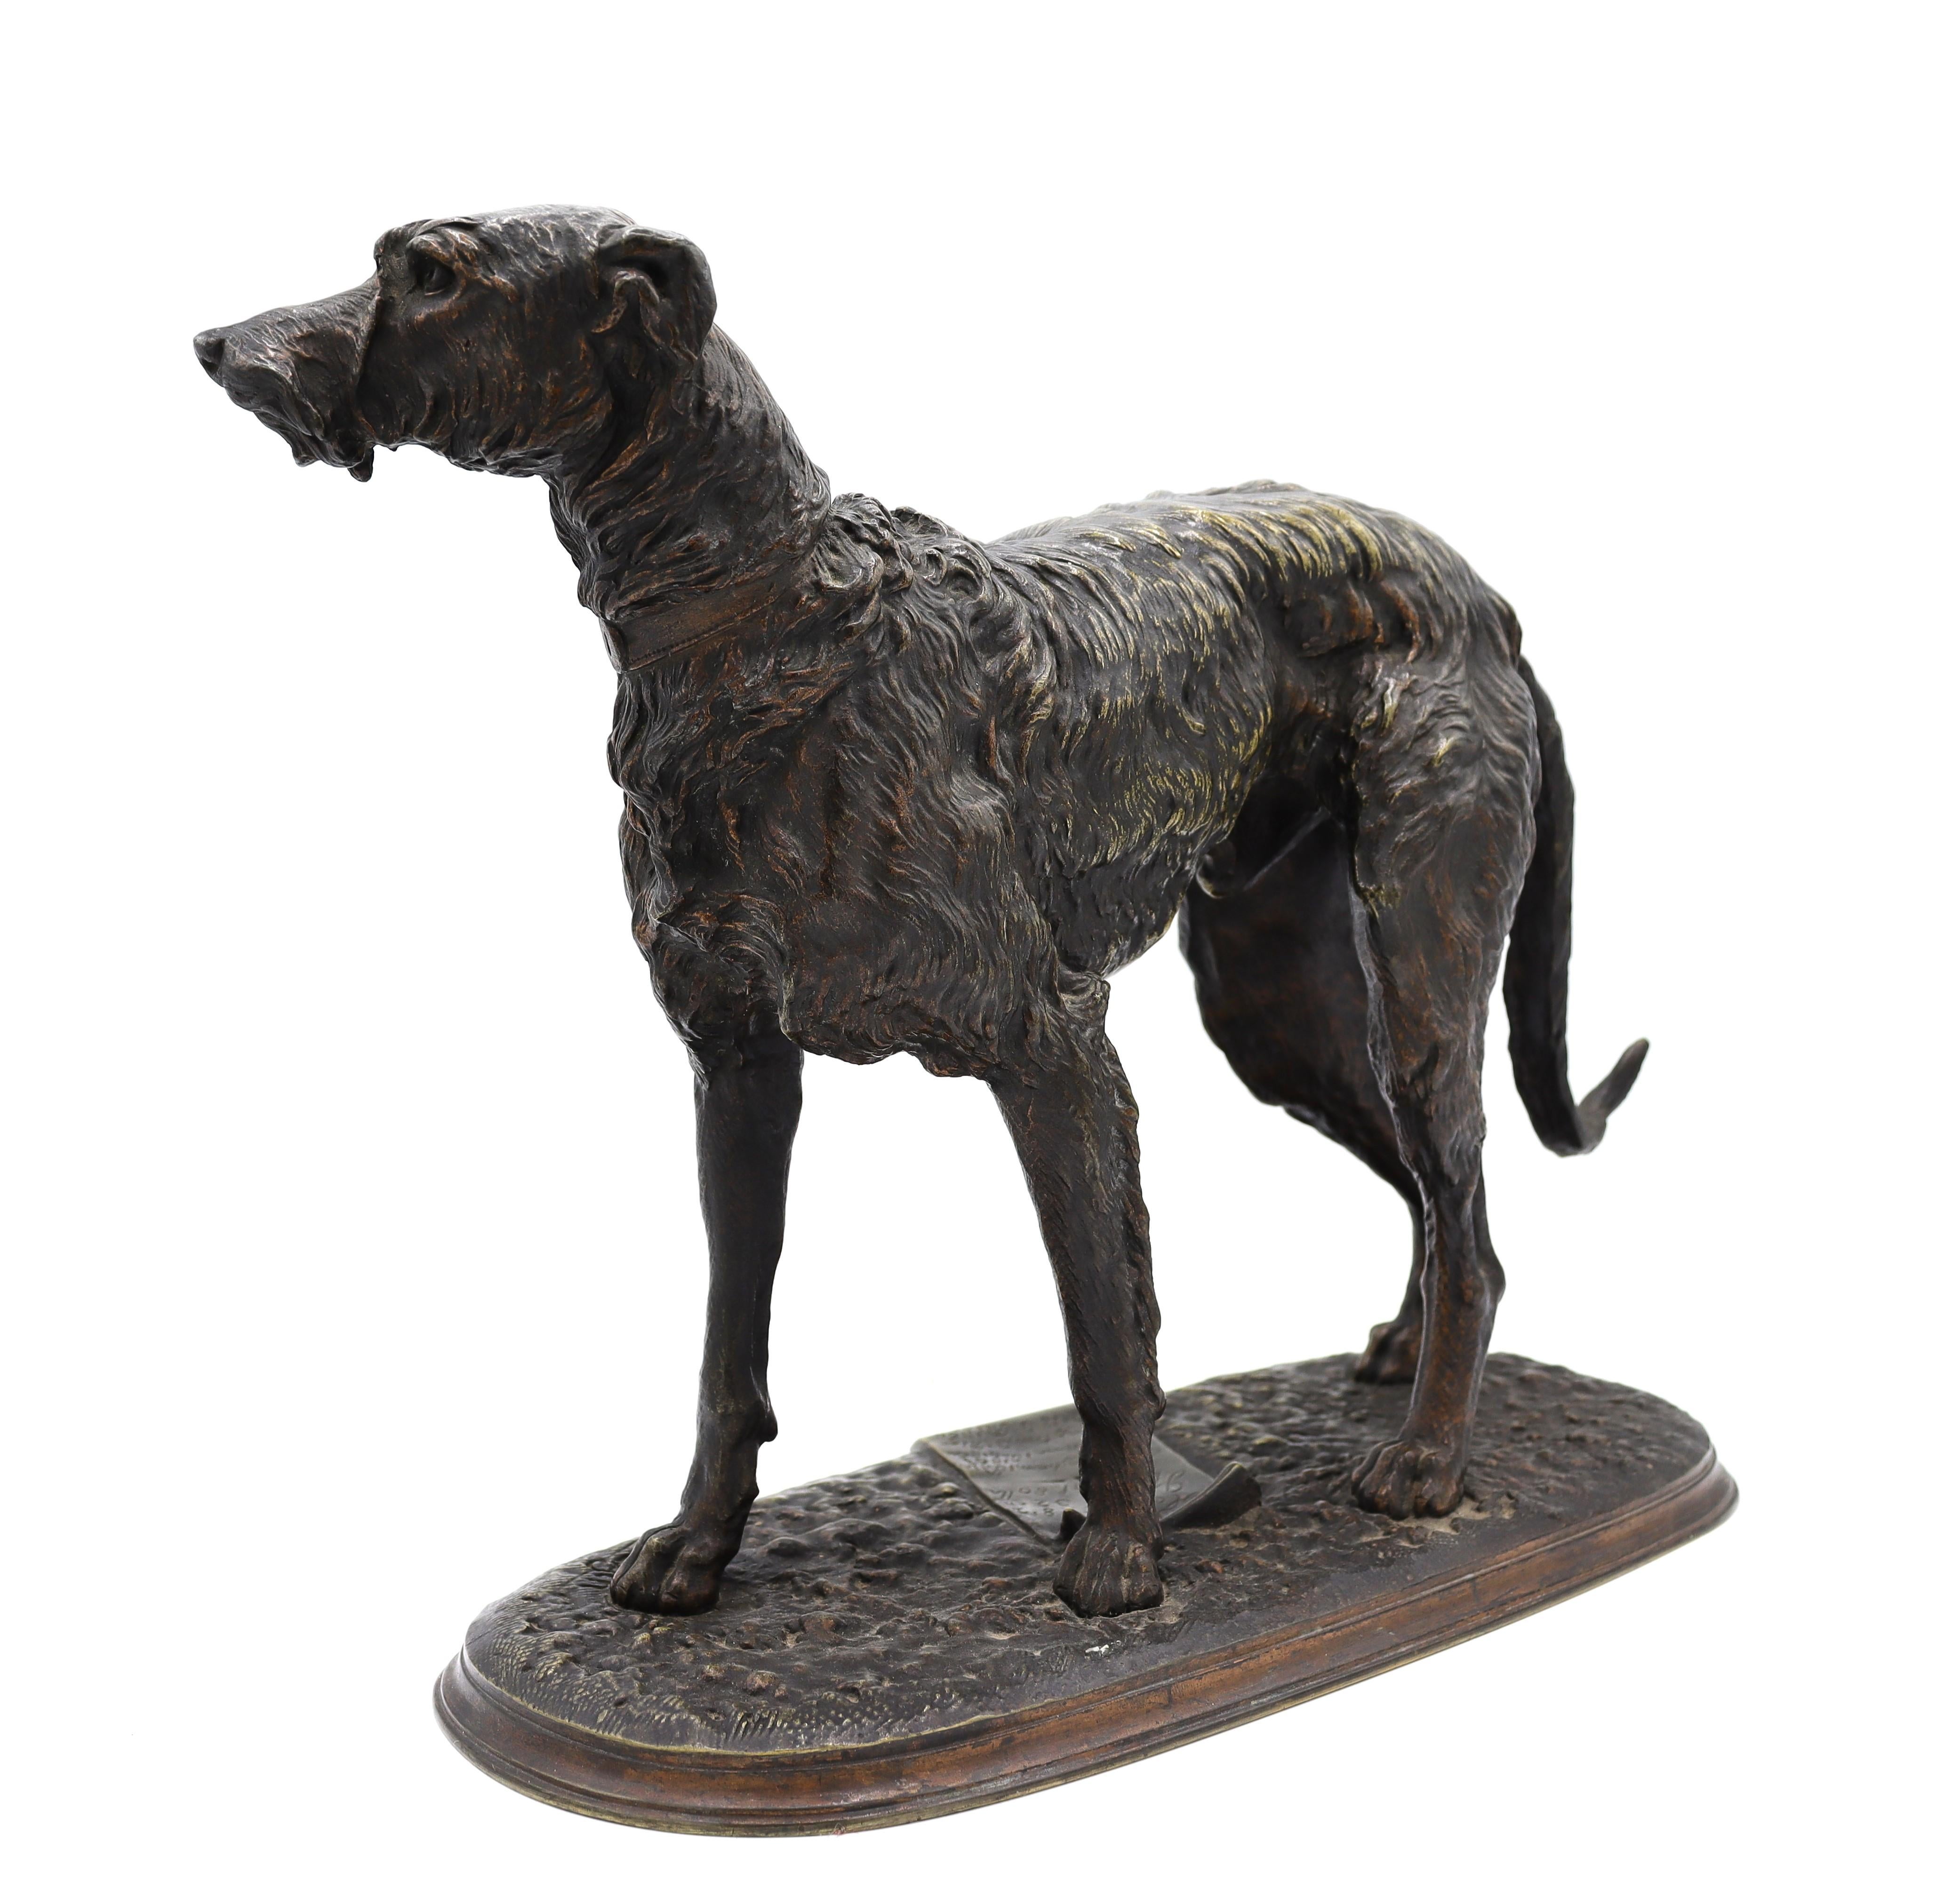 A 19th century bronze sculpture of an Irish Wolfhound dog - Sculpture by Arthur Waagen 